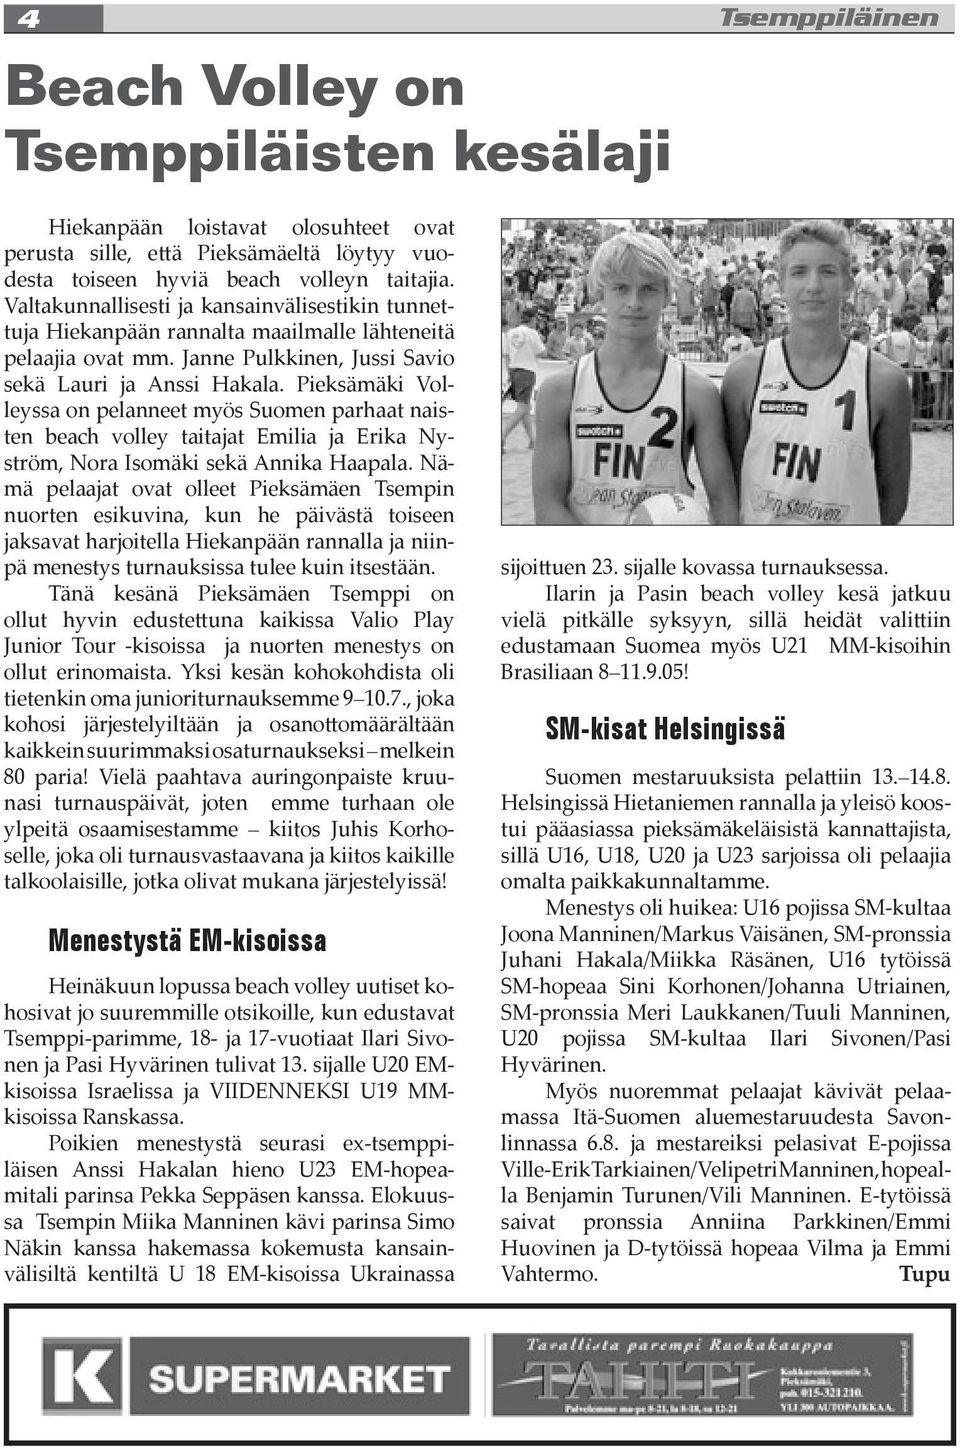 Pieksämäki Volleyssa on pelanneet myös Suomen parhaat naisten beach volley taitajat Emilia ja Erika Nyström, Nora Isomäki sekä Annika Haapala.